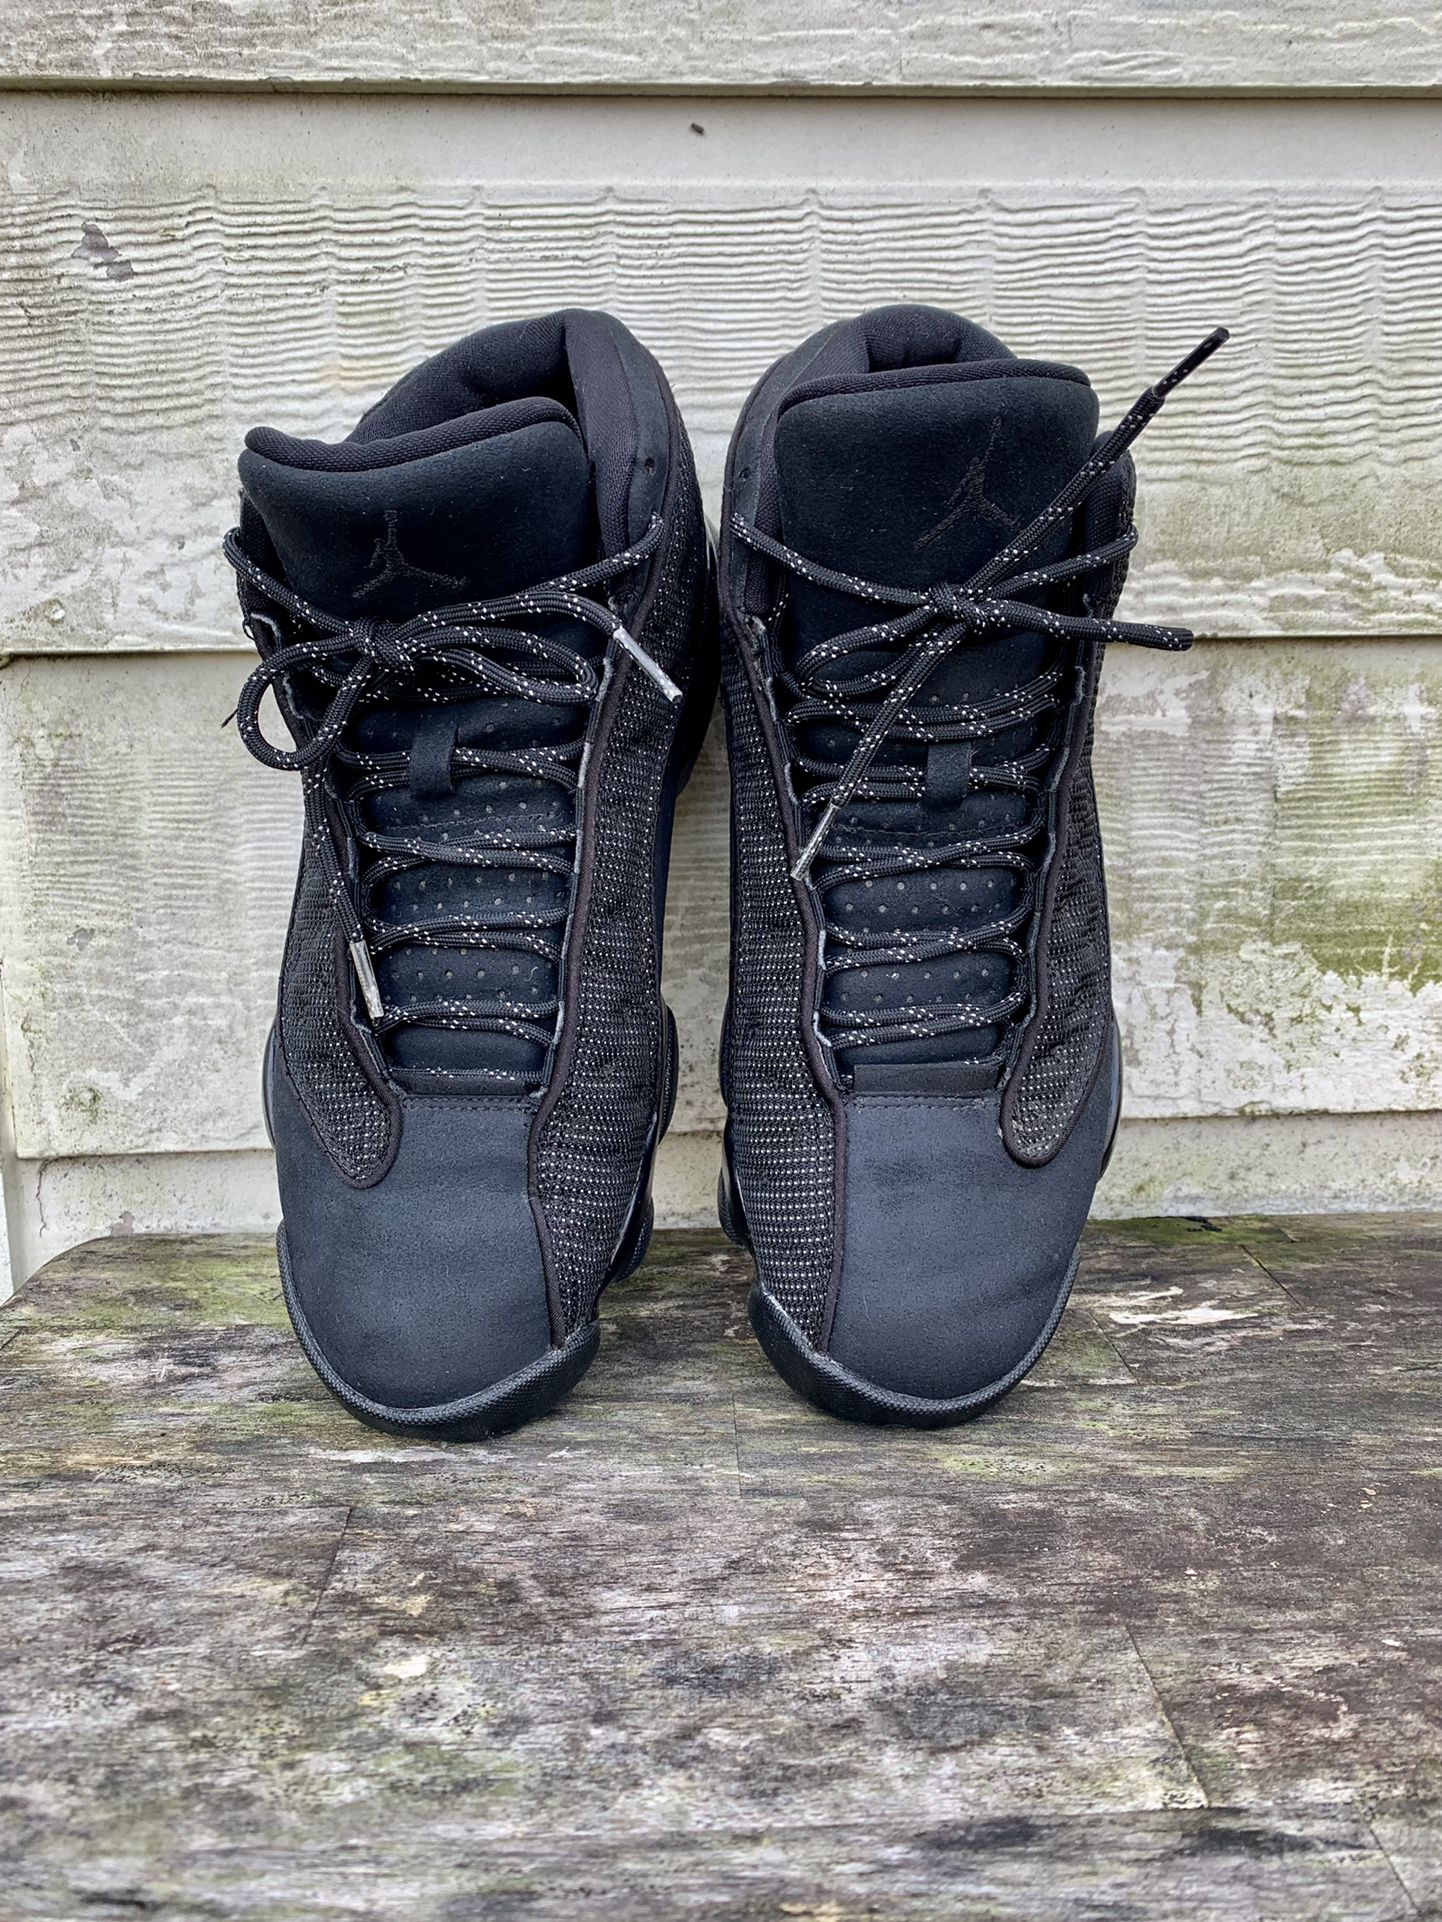 Air Jordan Retro 13 Black Cat/On Feet 